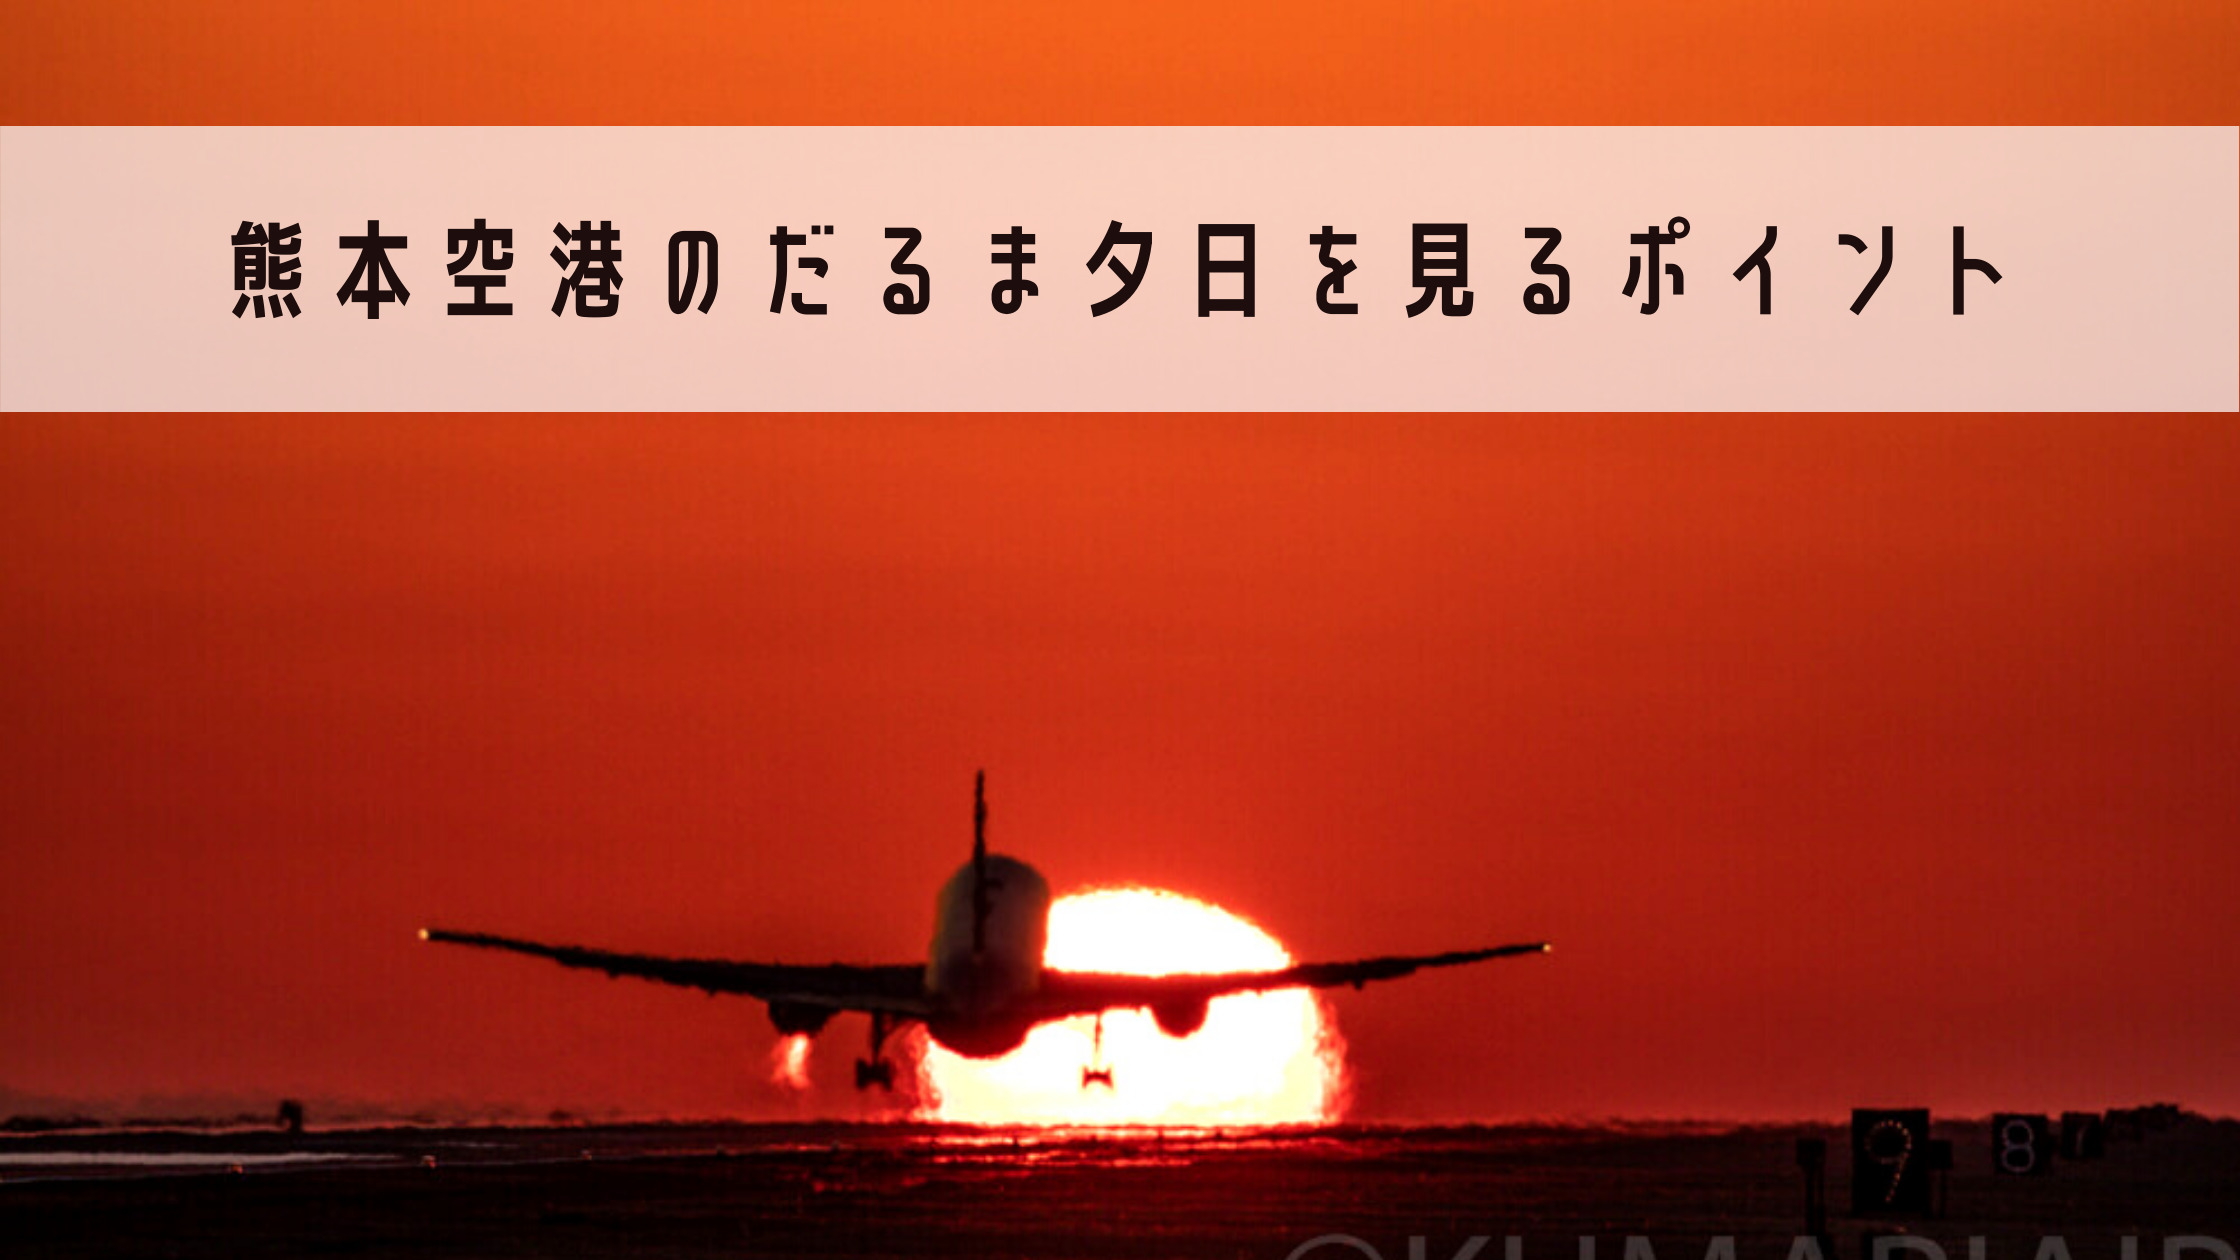 熊本空港 飛行機と滑走路に沈むだるま夕日の撮影ポイントとは ベストシーズン スポットを詳しく解説 シテイリョウコウ